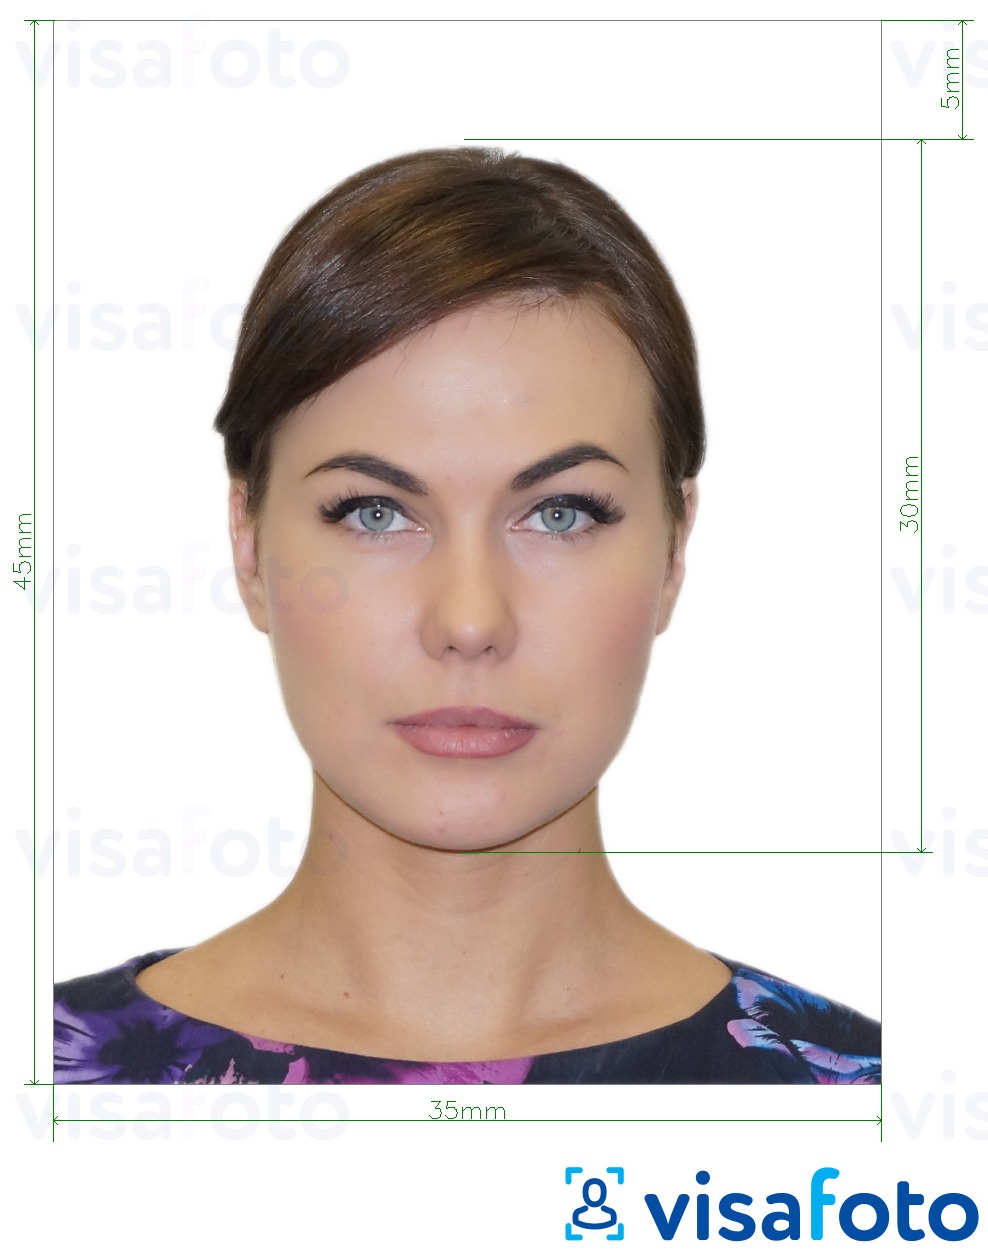 Ejemplo de foto para Visa de Rusia a través de VFS Global 35x45 mm con la especificación del tamaño exacto